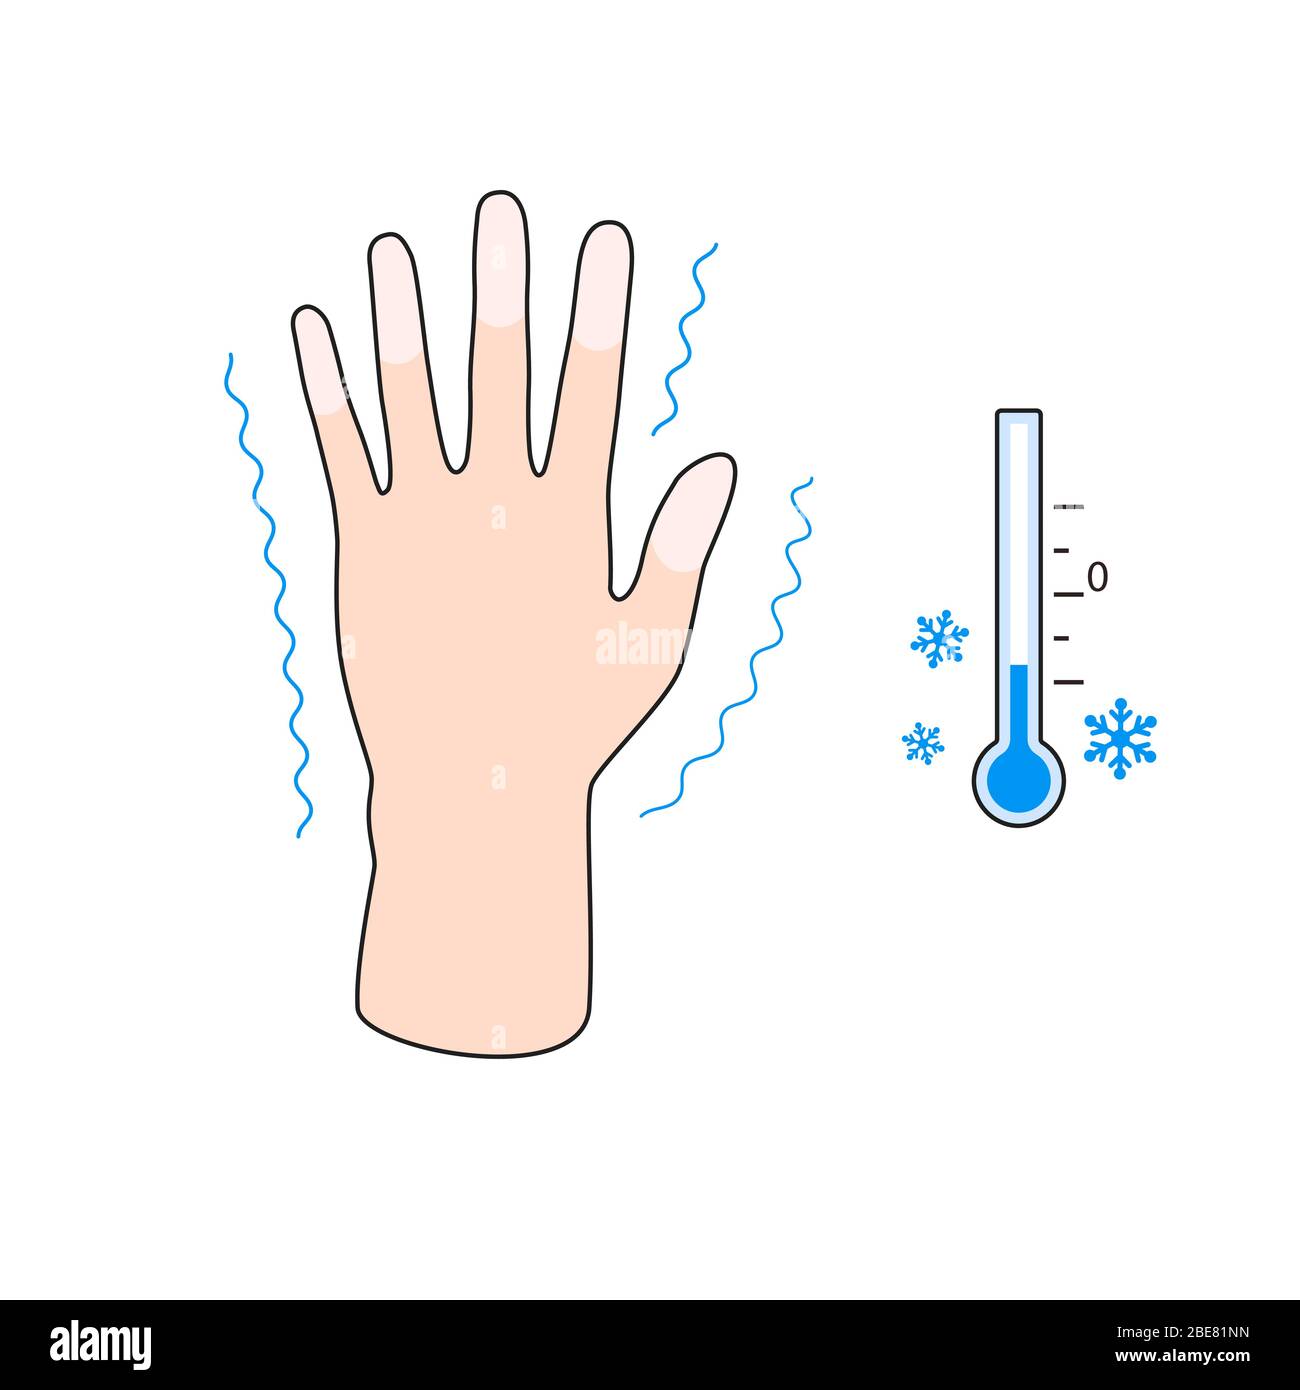 Erfrierungen. Hand mit Erfrierungen Symptome. Wirkung der Kälte auf die Finger des Menschen. Vektorgrafik Stock Vektor